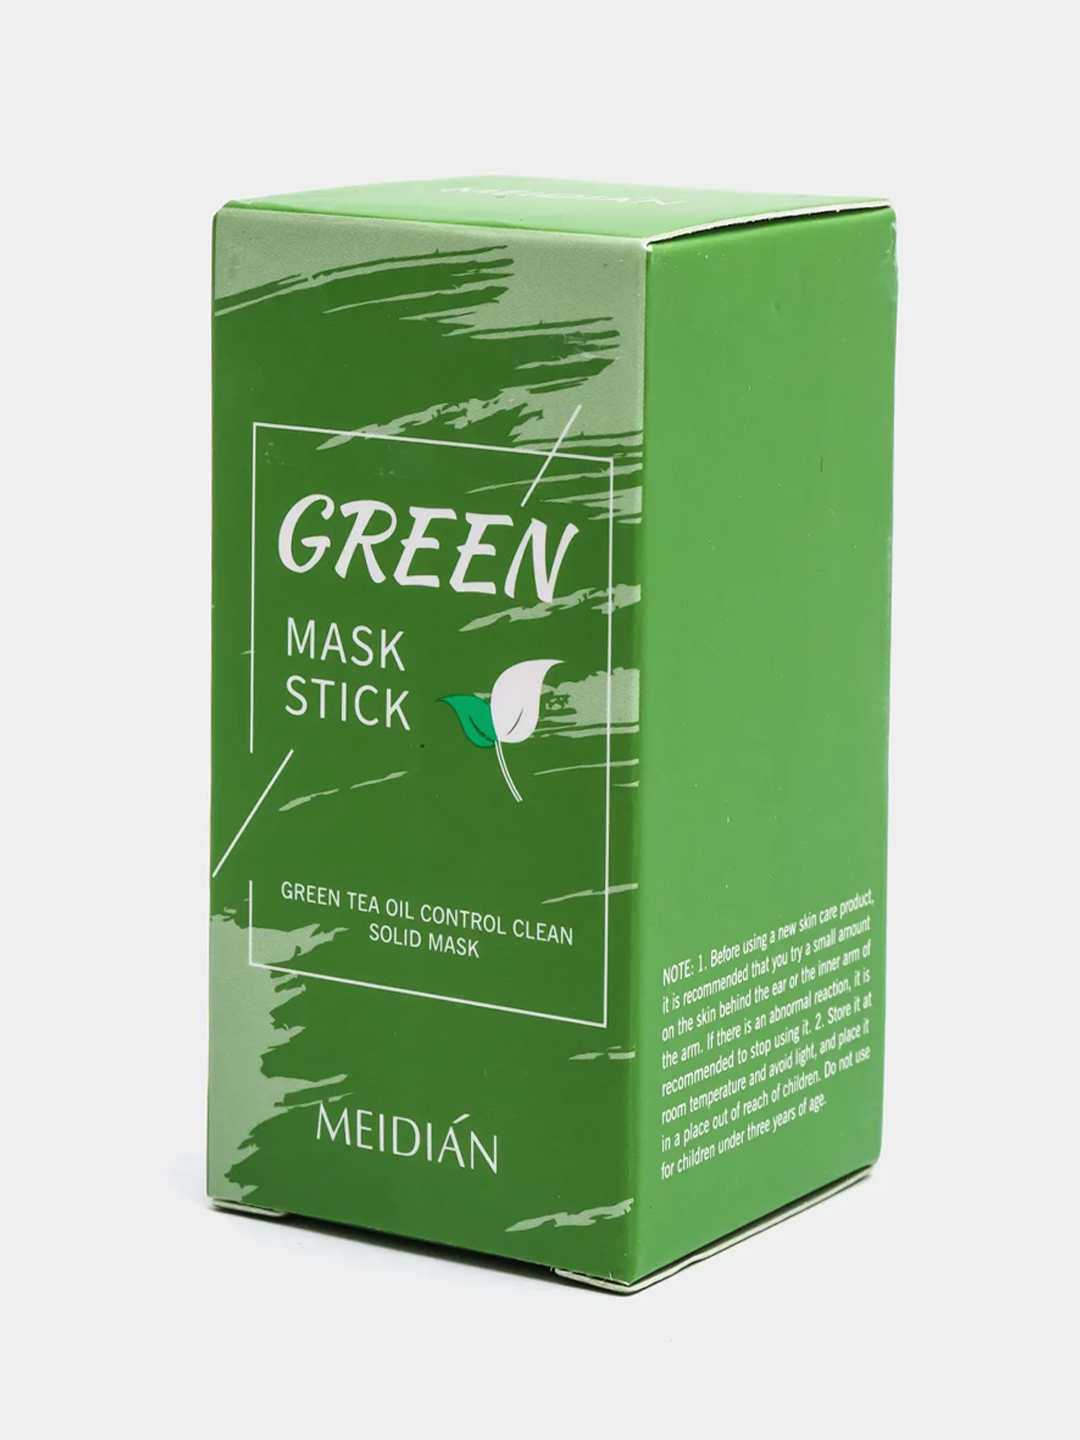 Стик воронеж. Маска стик зеленый чай. Зеленая маска стик. Стики с зеленым чаем. Маска стик зеленого цвета.